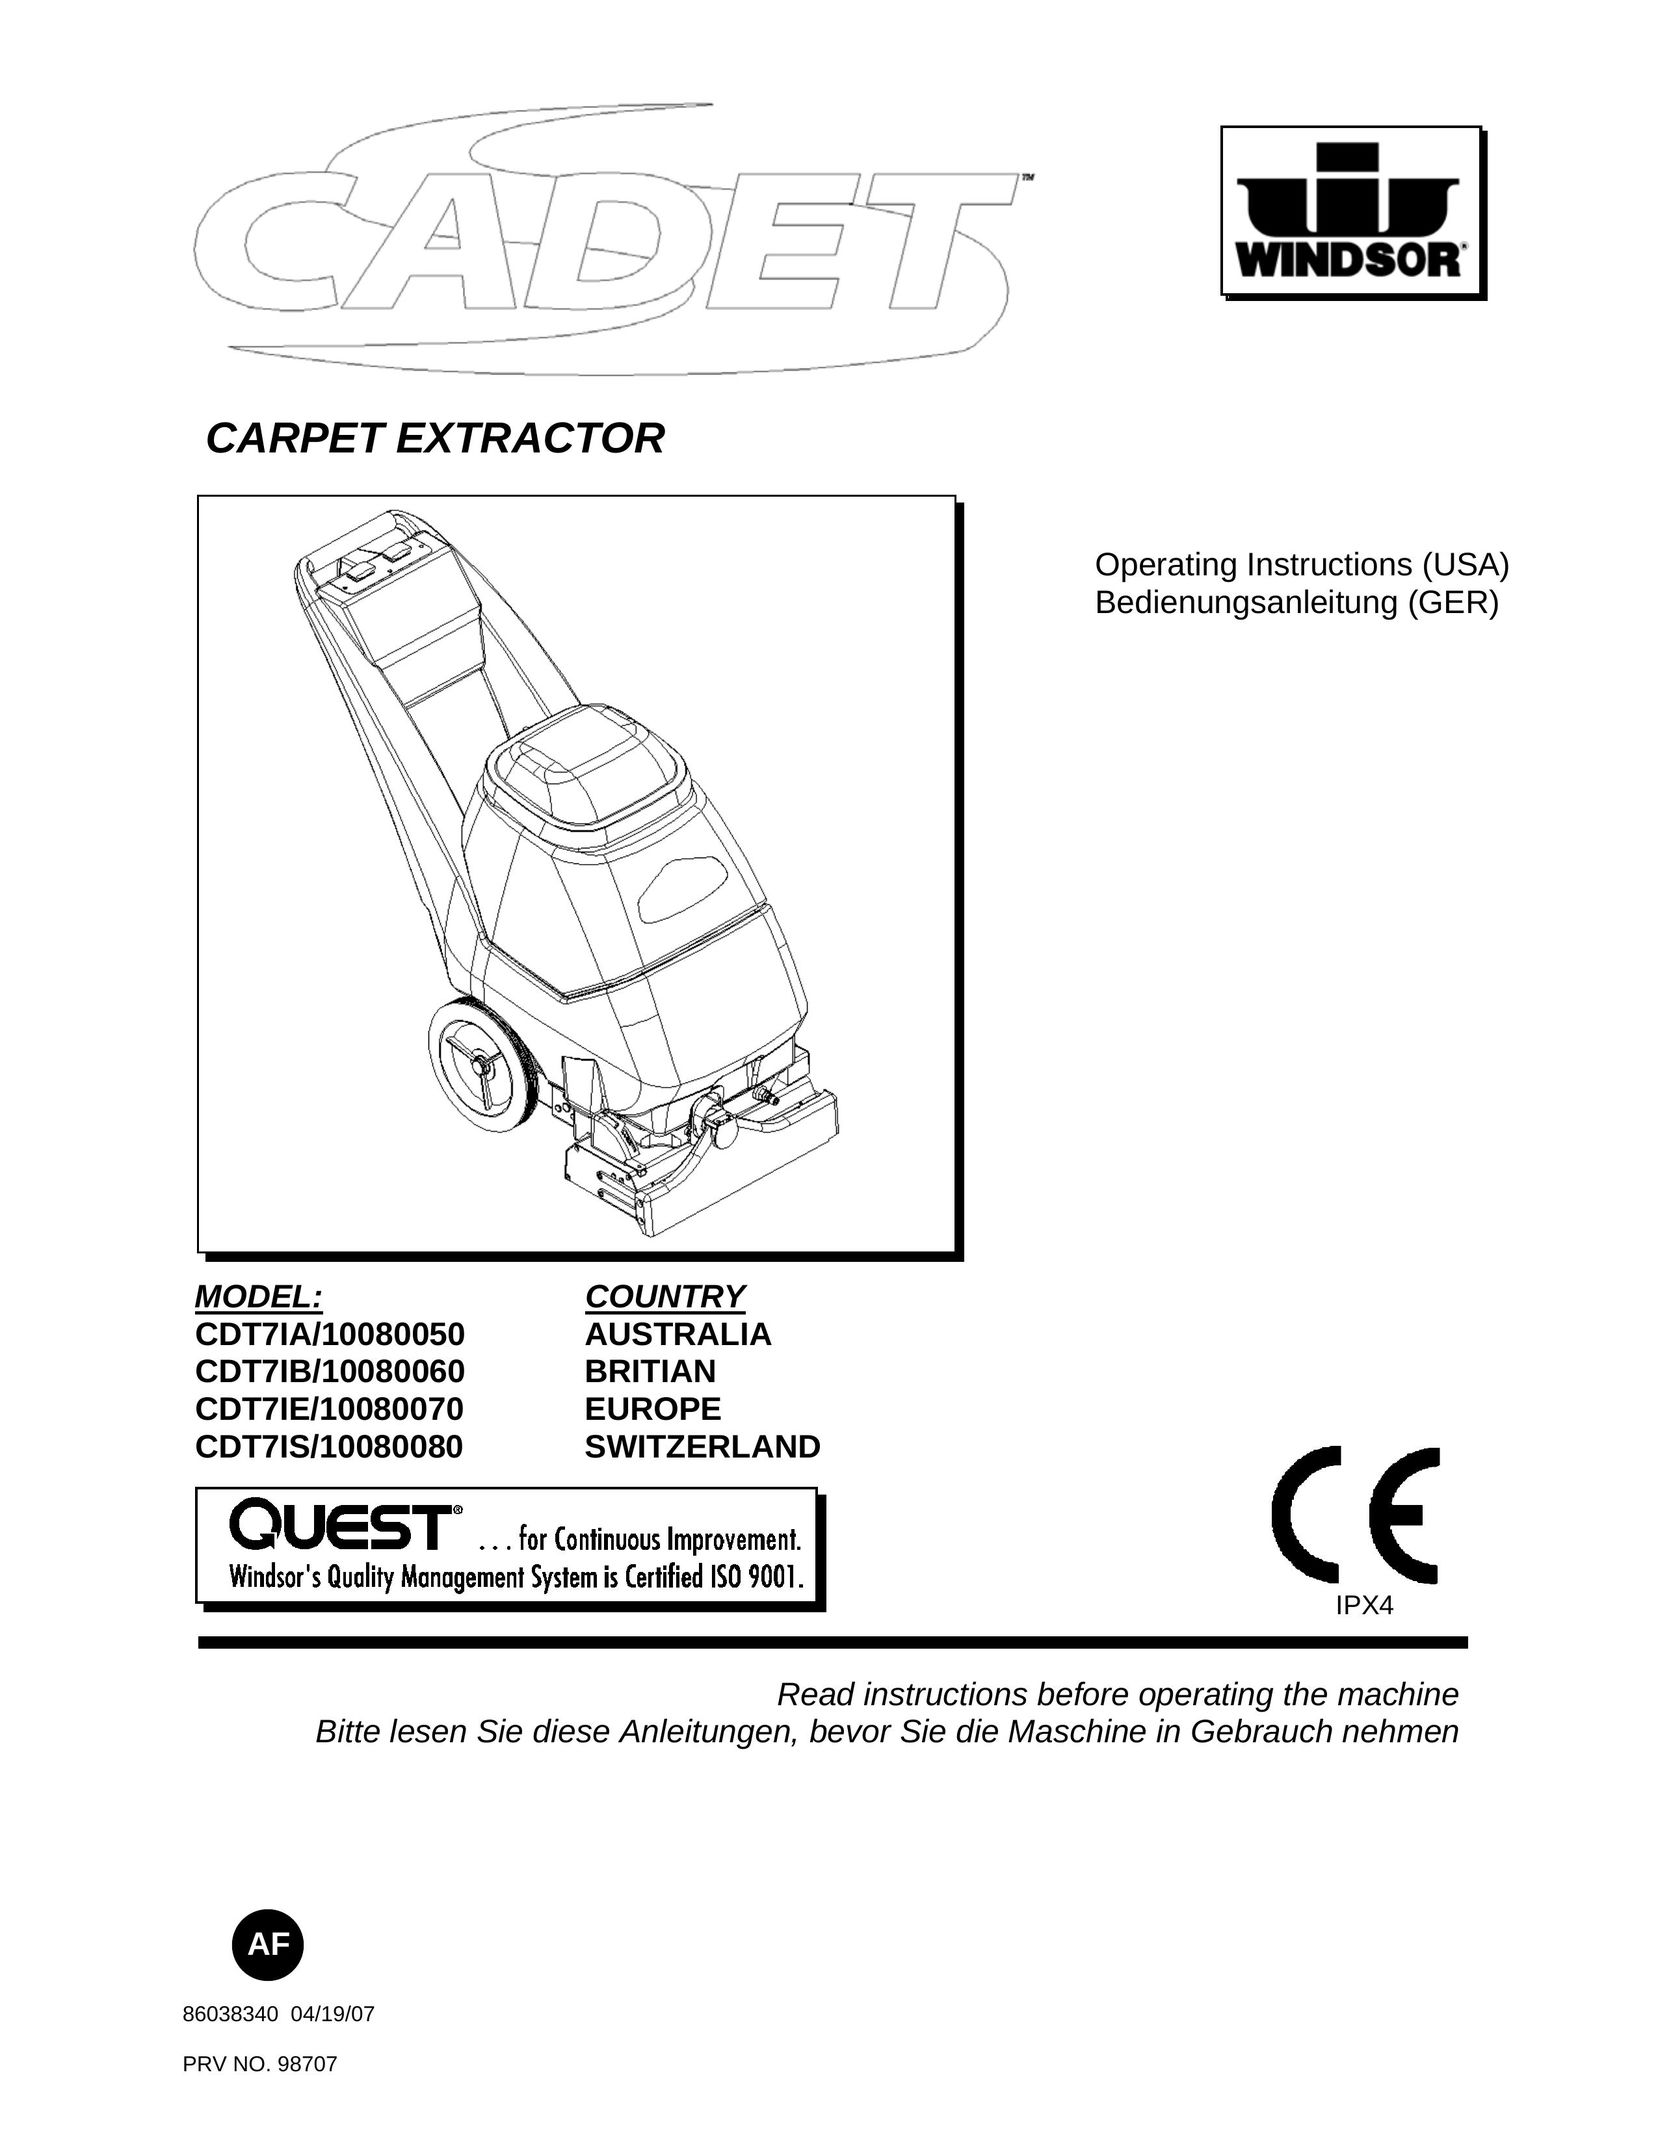 Windsor CDT7IS/10080080 Carpet Cleaner User Manual